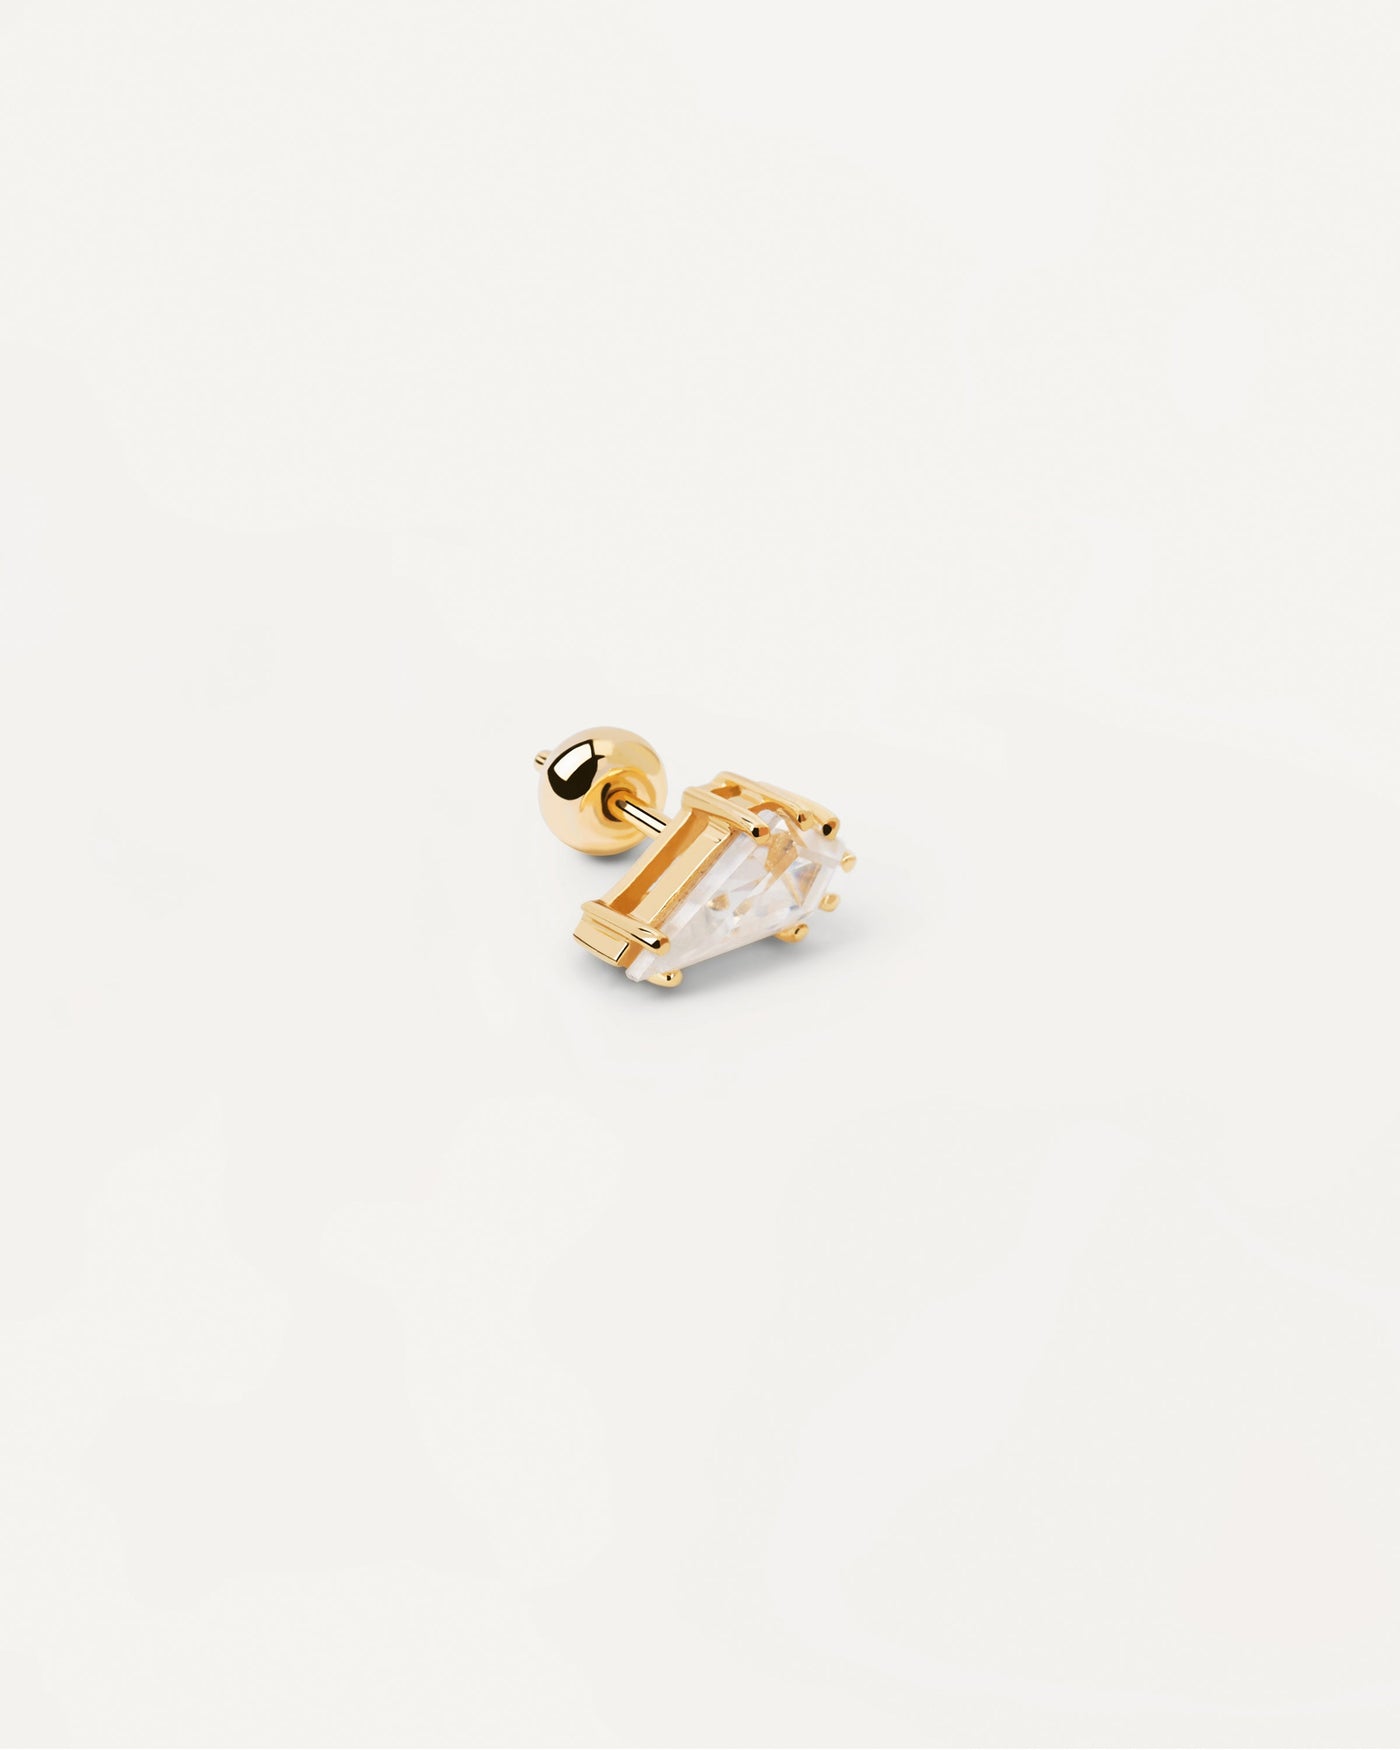 Noa Einzelner Ohrring. Vergoldeter Piercing-Ohrring mit tropfenförmigem weißem Zirkonia. Erhalten Sie die neuesten Produkte von PDPAOLA. Geben Sie Ihre Bestellung sicher auf und erhalten Sie diesen Bestseller.